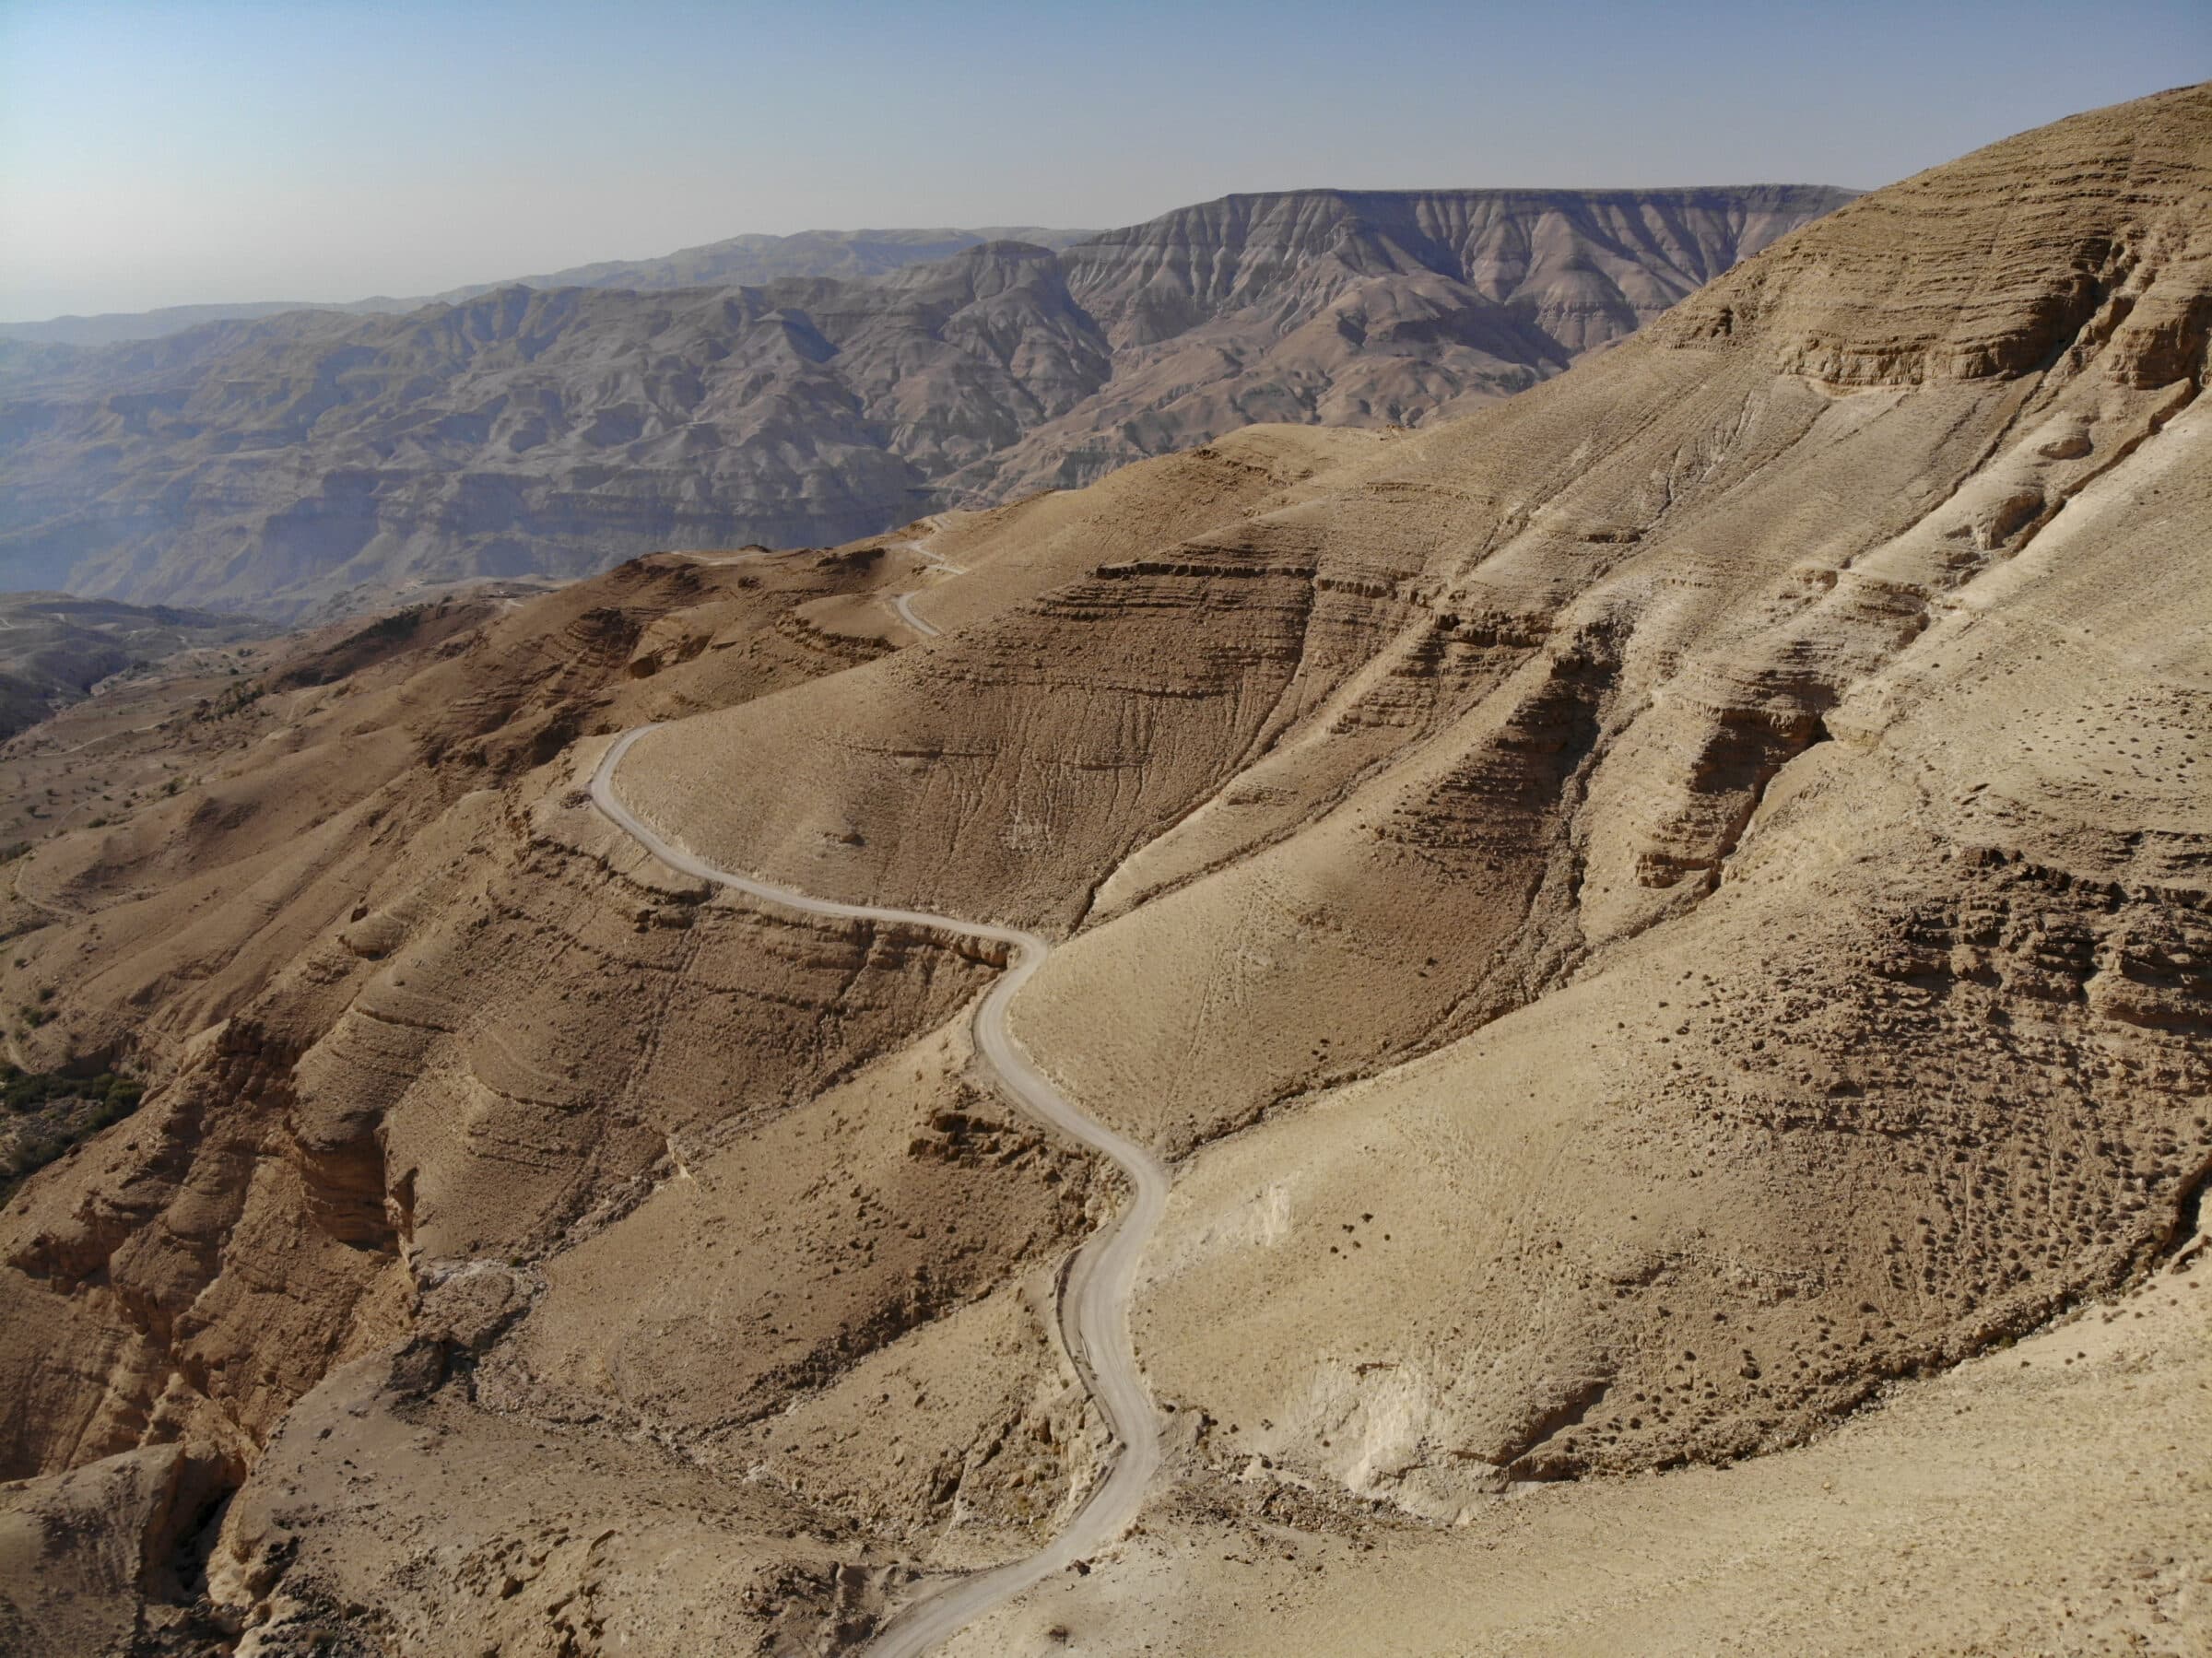 Fotografija dronom, snimljena u Jordanu